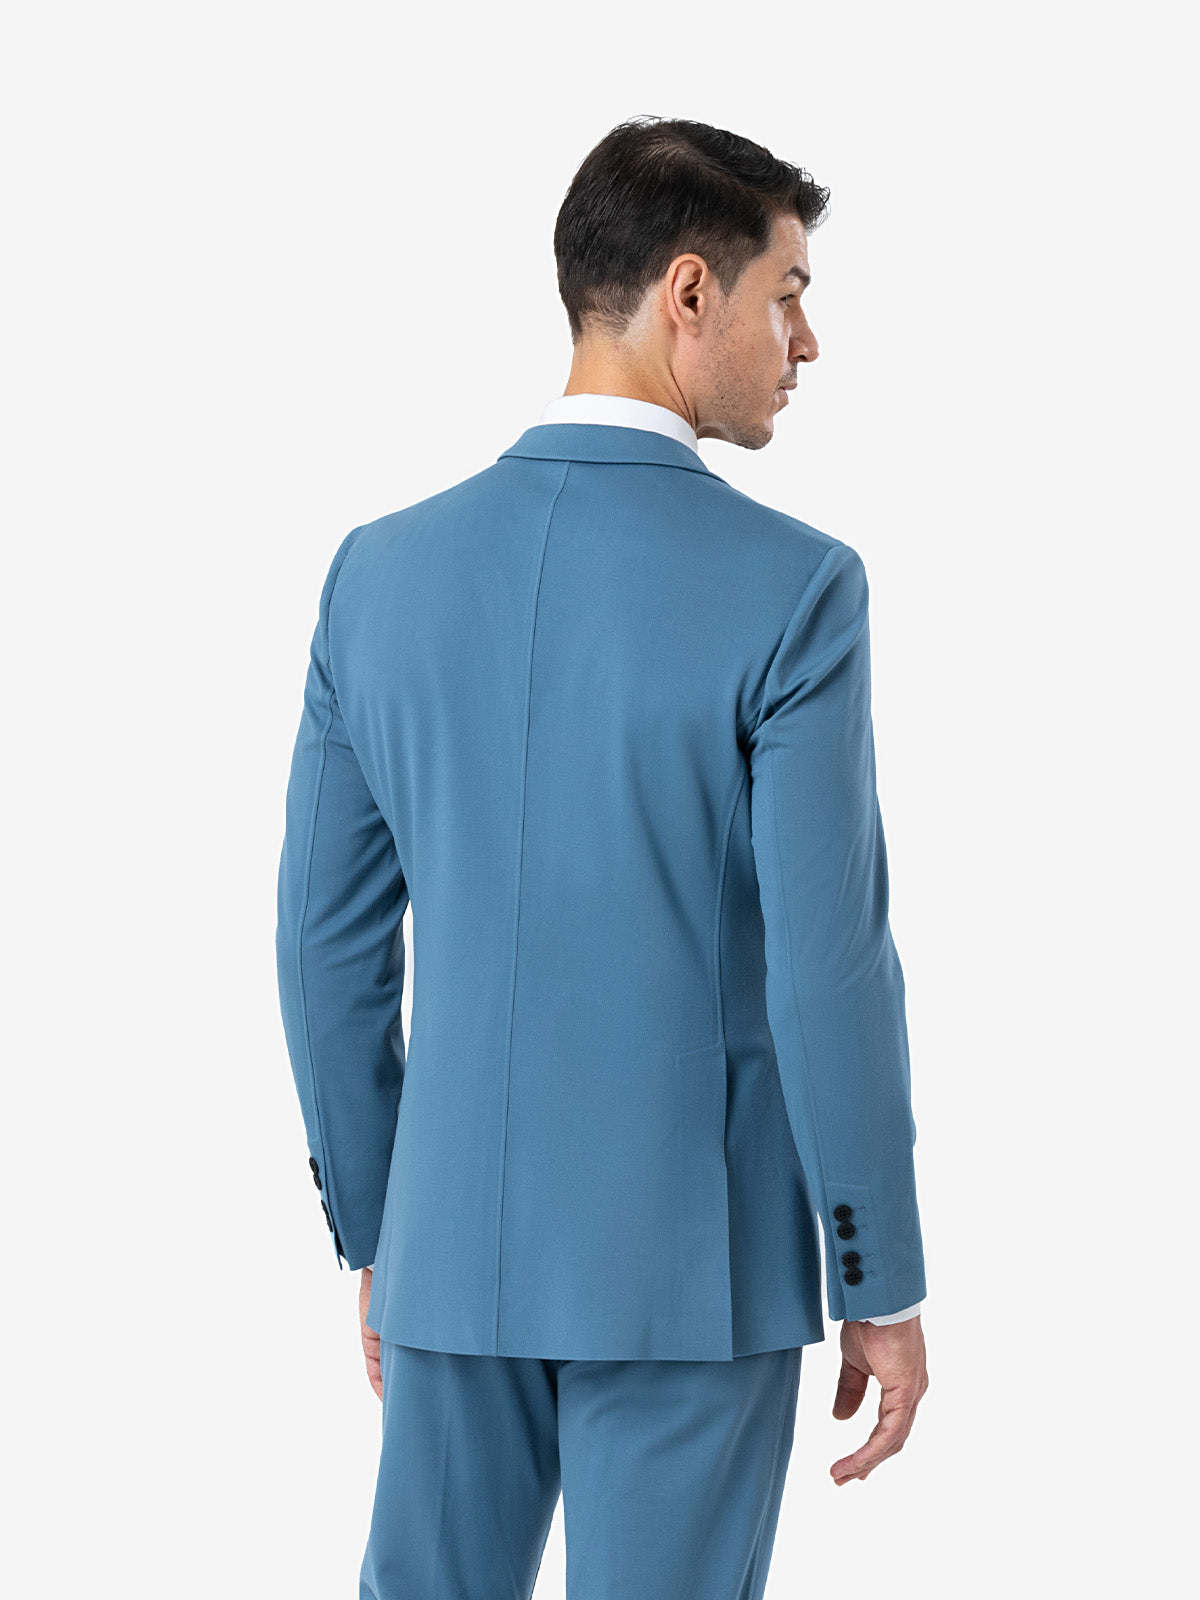 xSuit 4.0 Light Blue  Super Stretch & Machine Washable Men's Suit